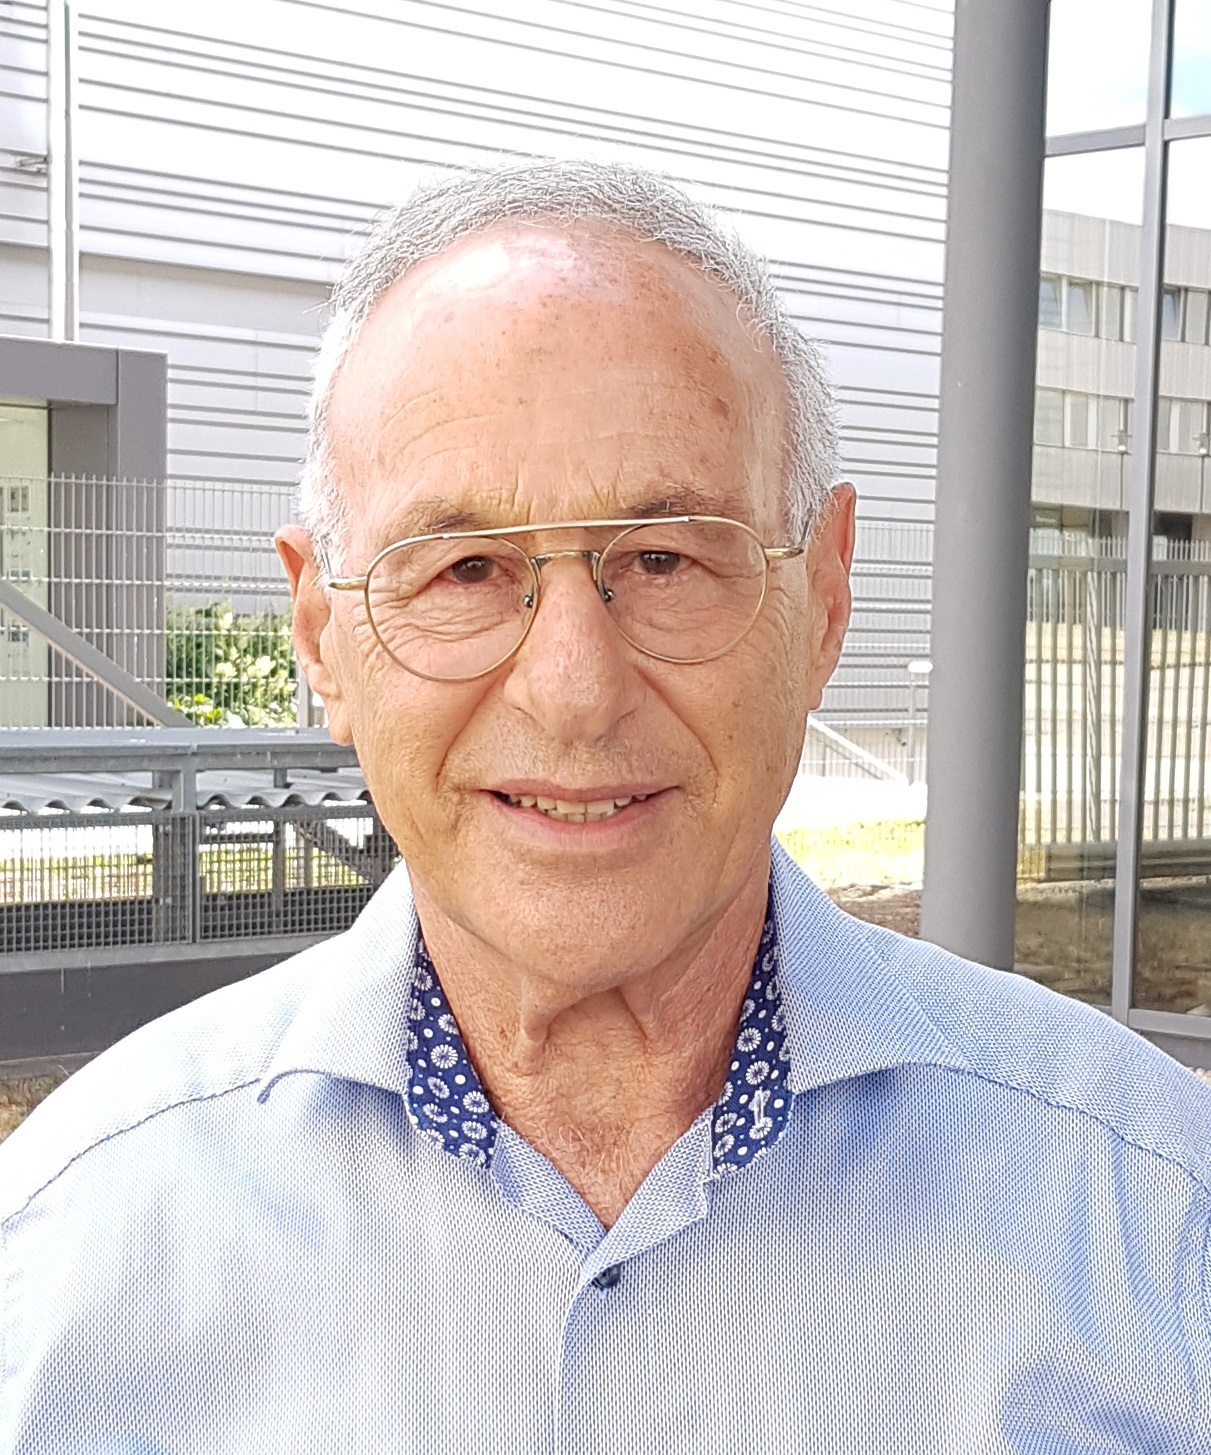 Professor Rafael Wertheim am Fraunhofer IWU, 6. Juli 2022